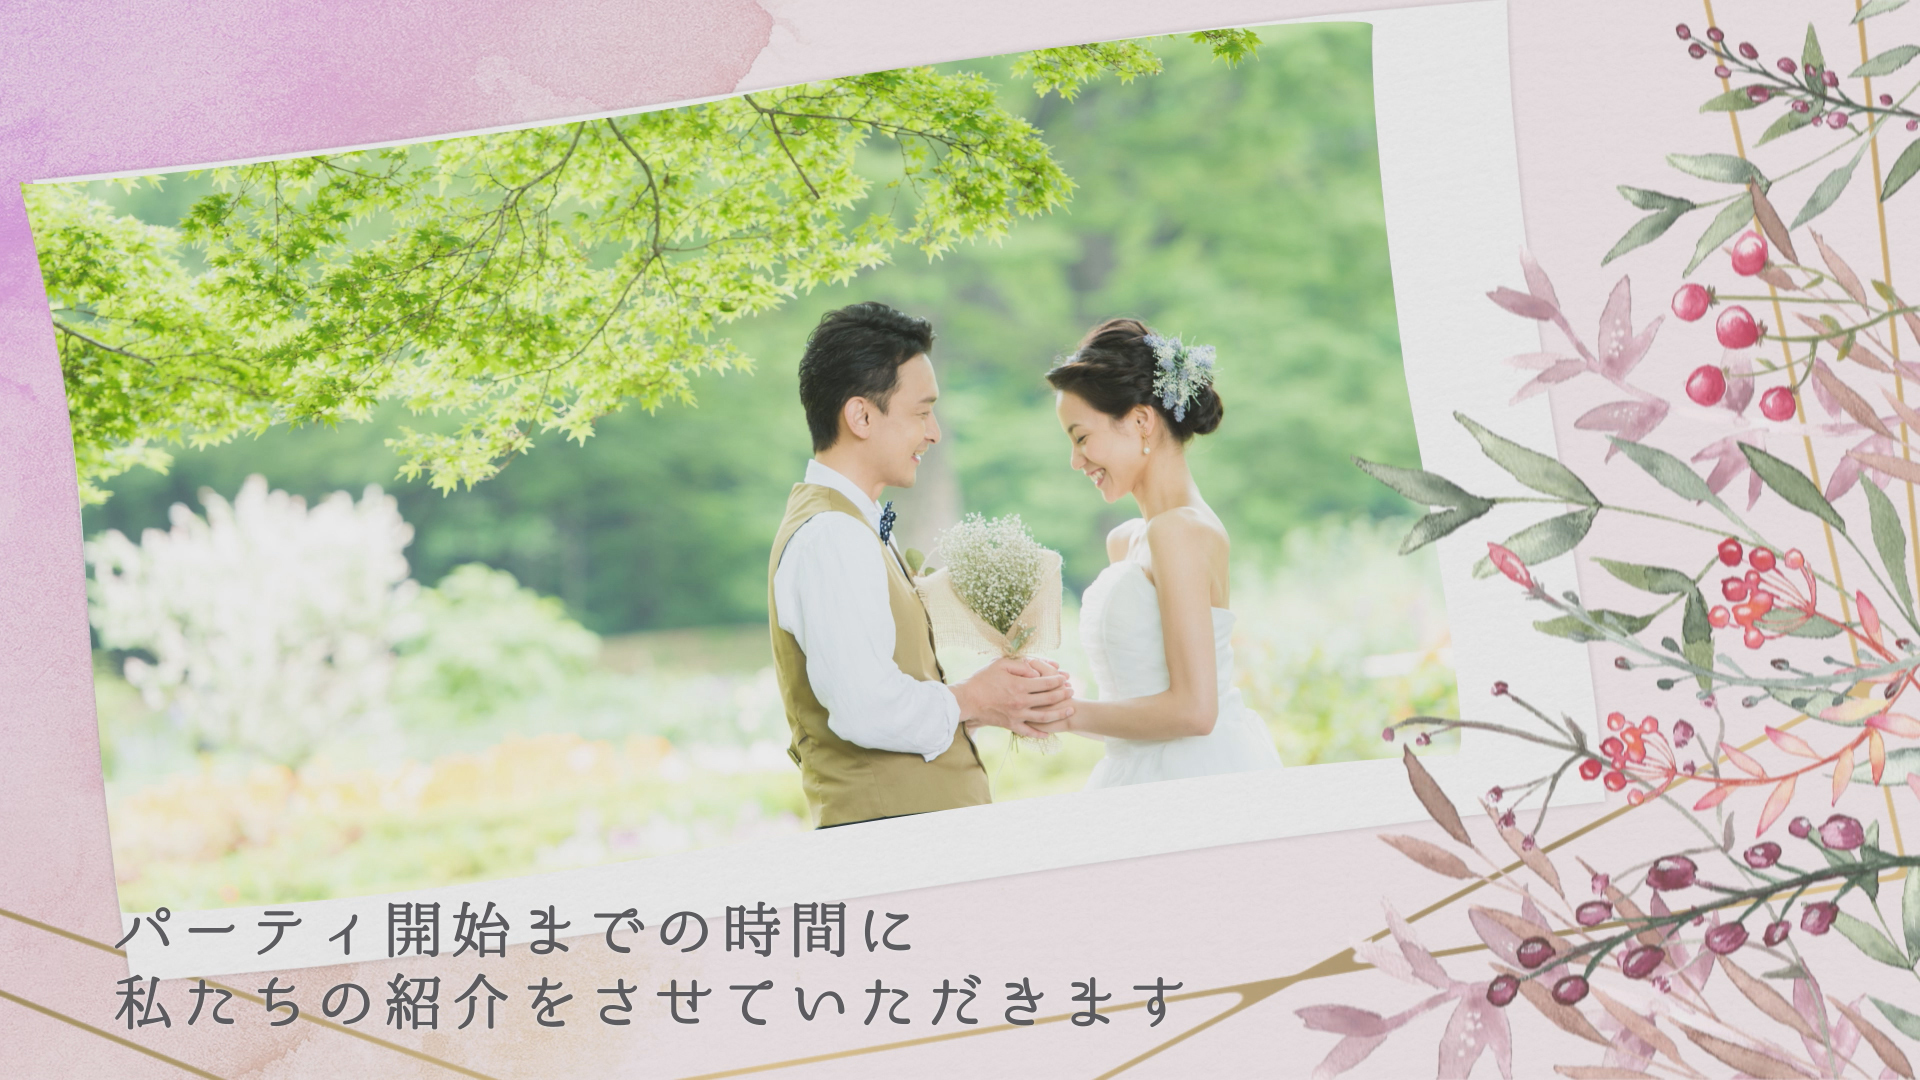 6,600円から利用できる結婚式ムービー【kitto】(キット)結婚式 ...